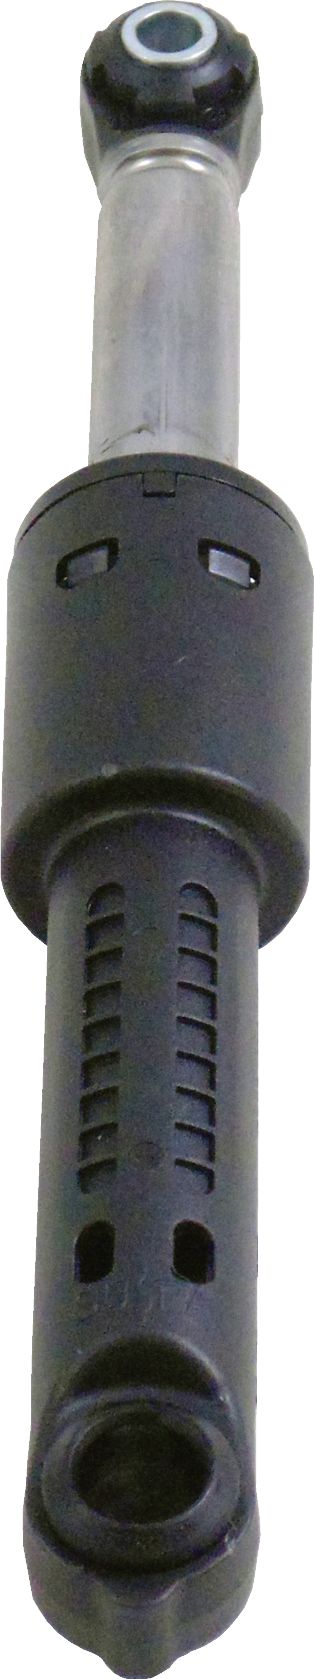 Амортизатор (профиль круглый)  для бака стиральной машины NEFF Нефф 660865